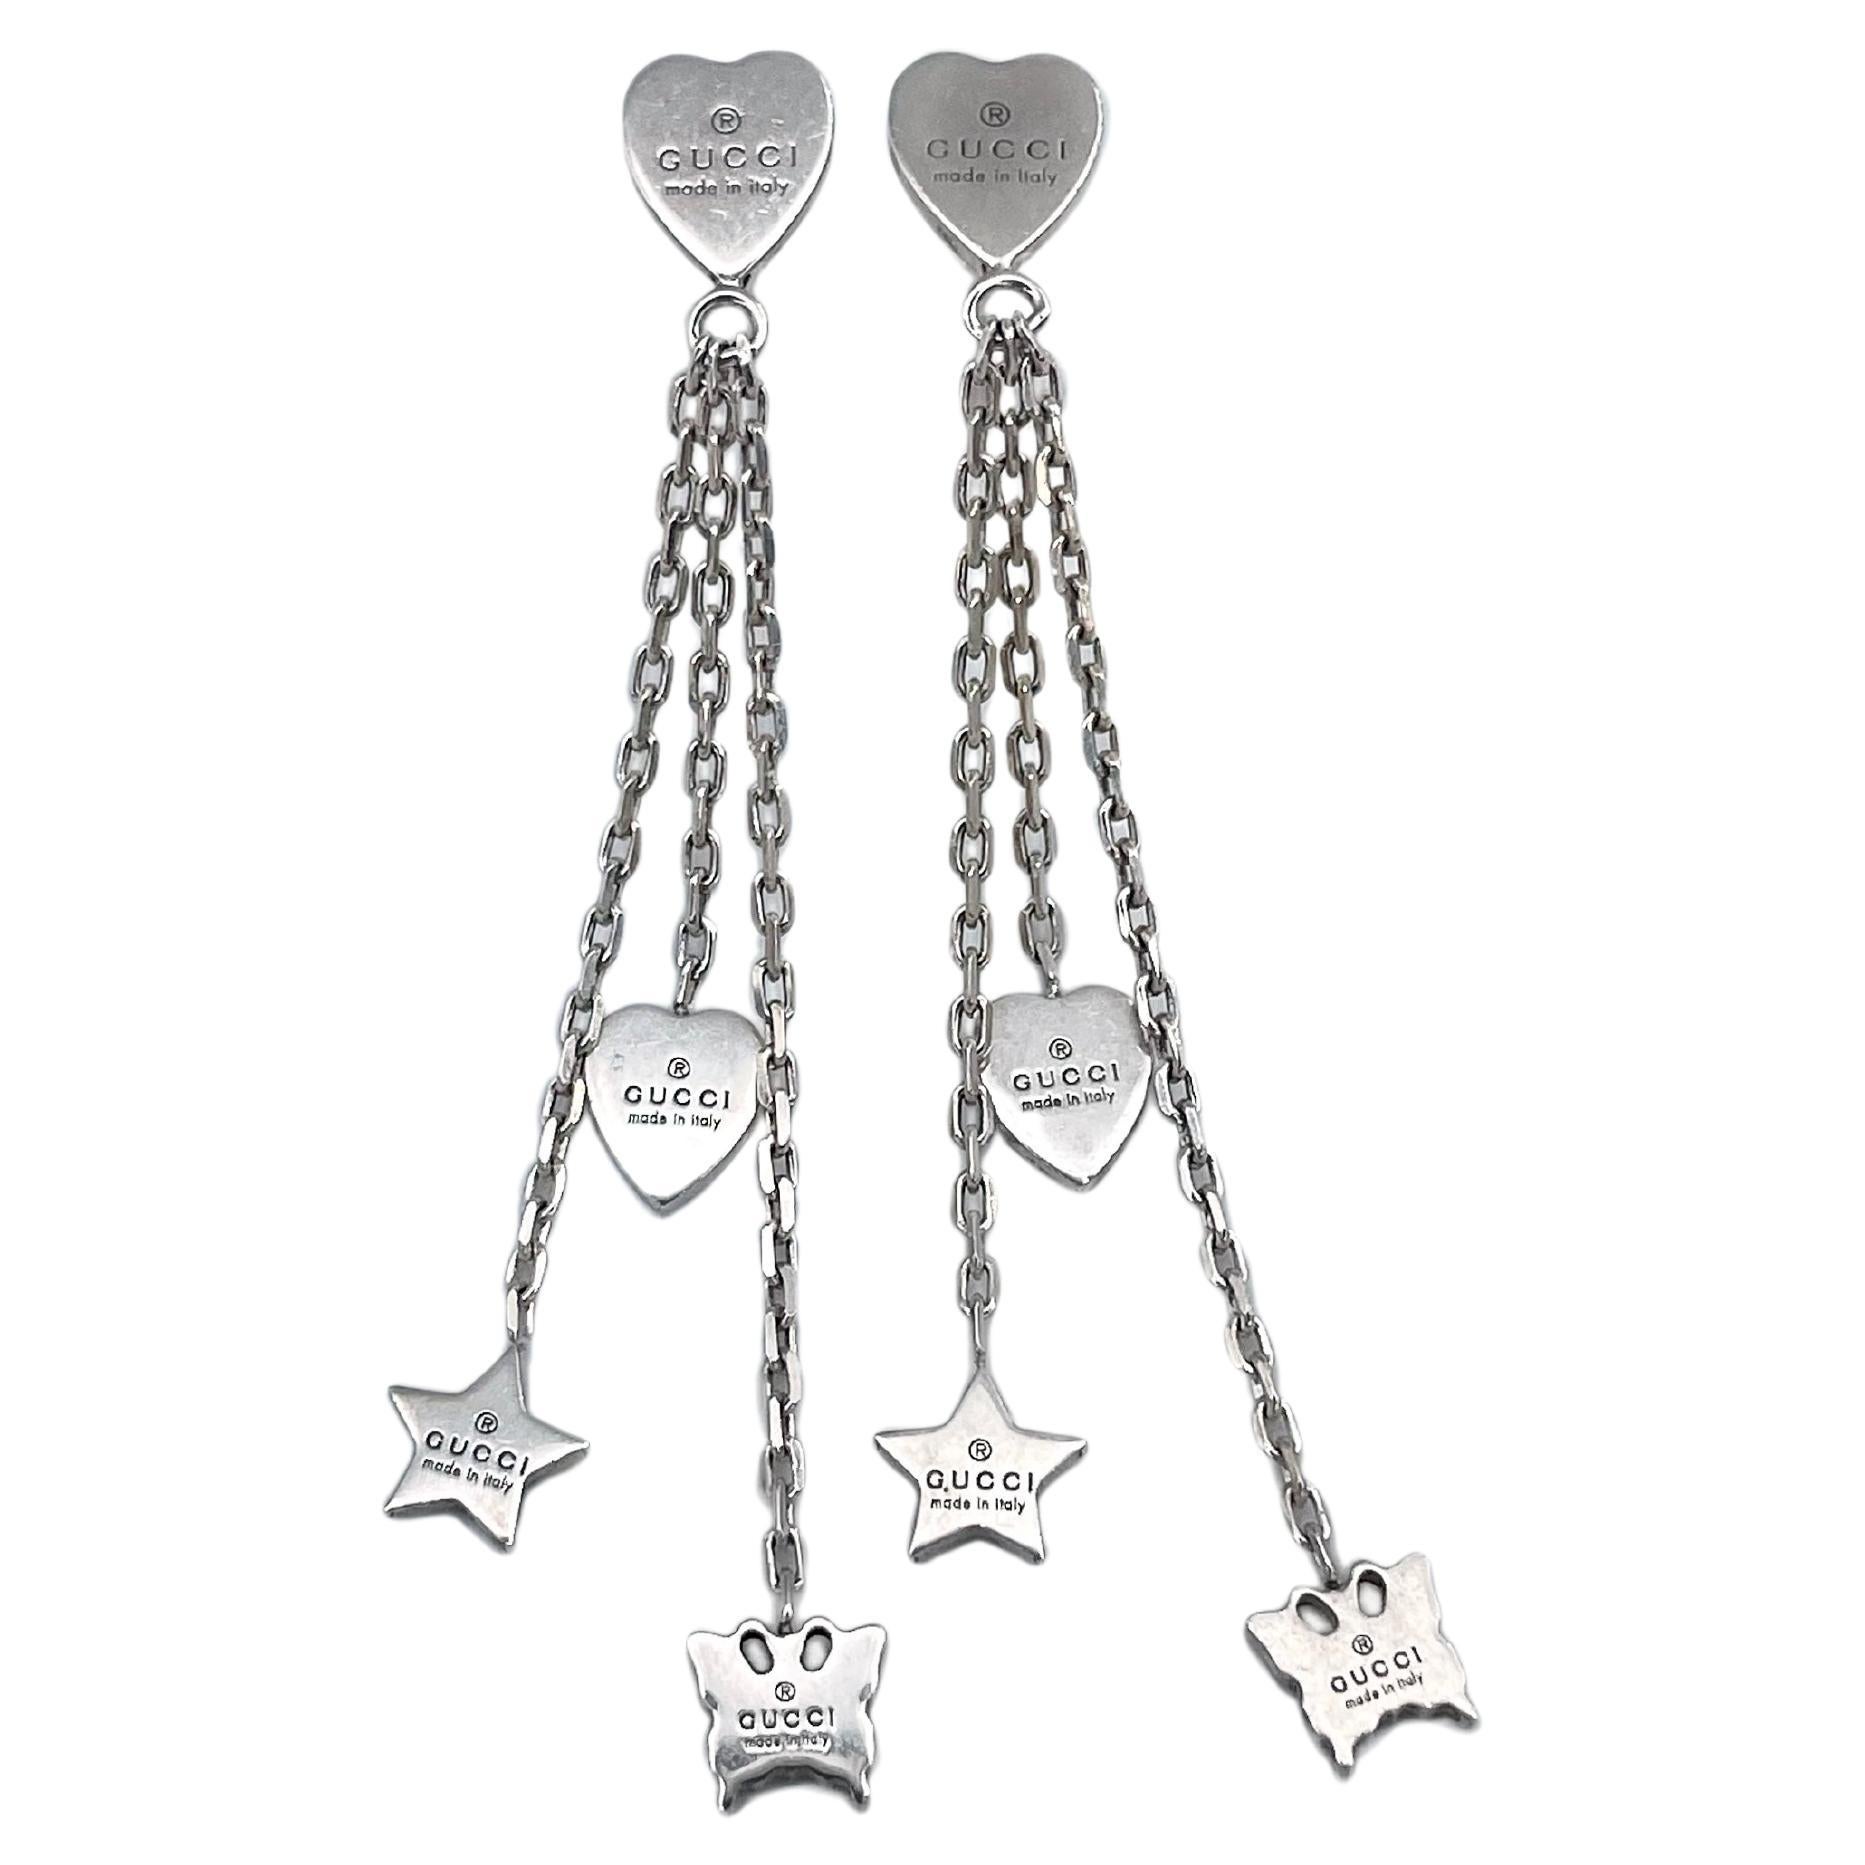 GUCCI Butterfly Logos Drop/Dangle Hook Earrings Silver 925 #1740 | eBay